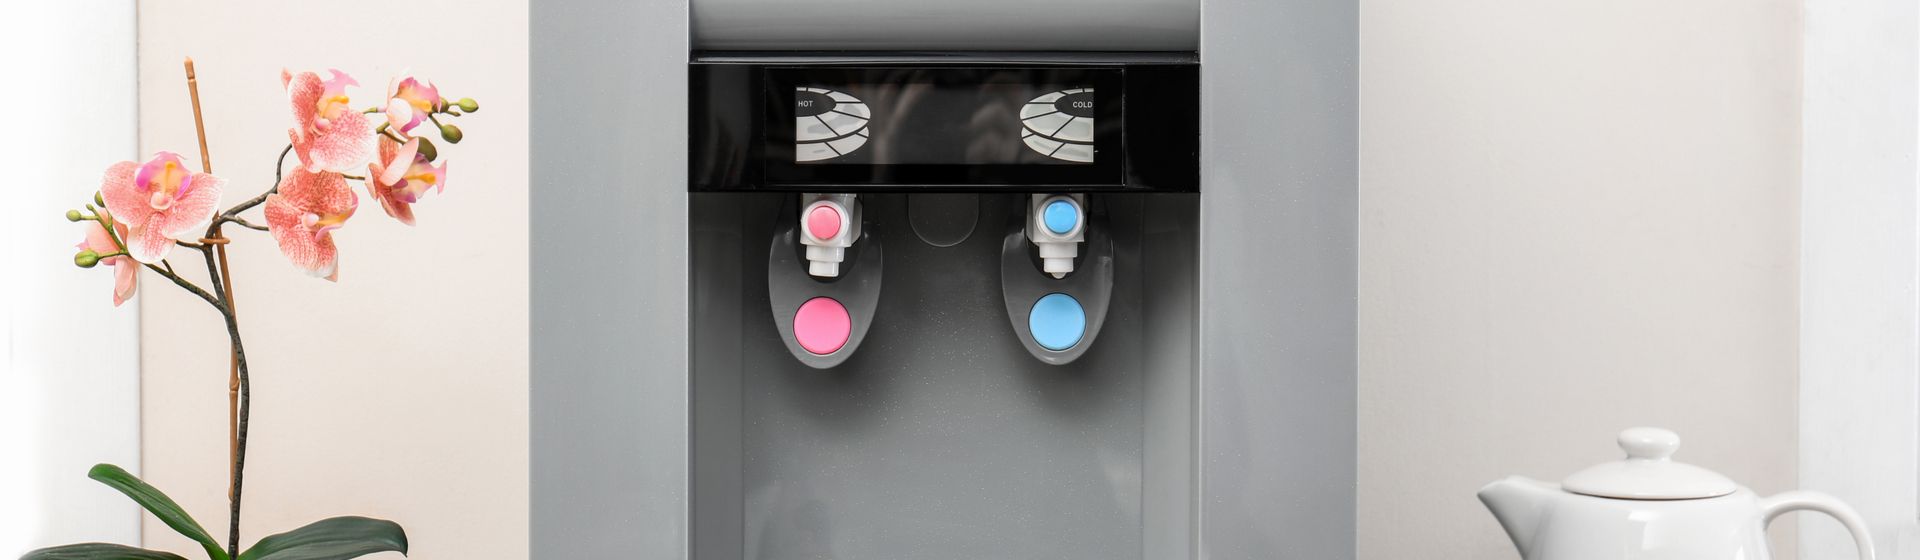 Purificador de água cinza com um botão rosa e outro azul centralizado na imagem, com parede bege ao fundo